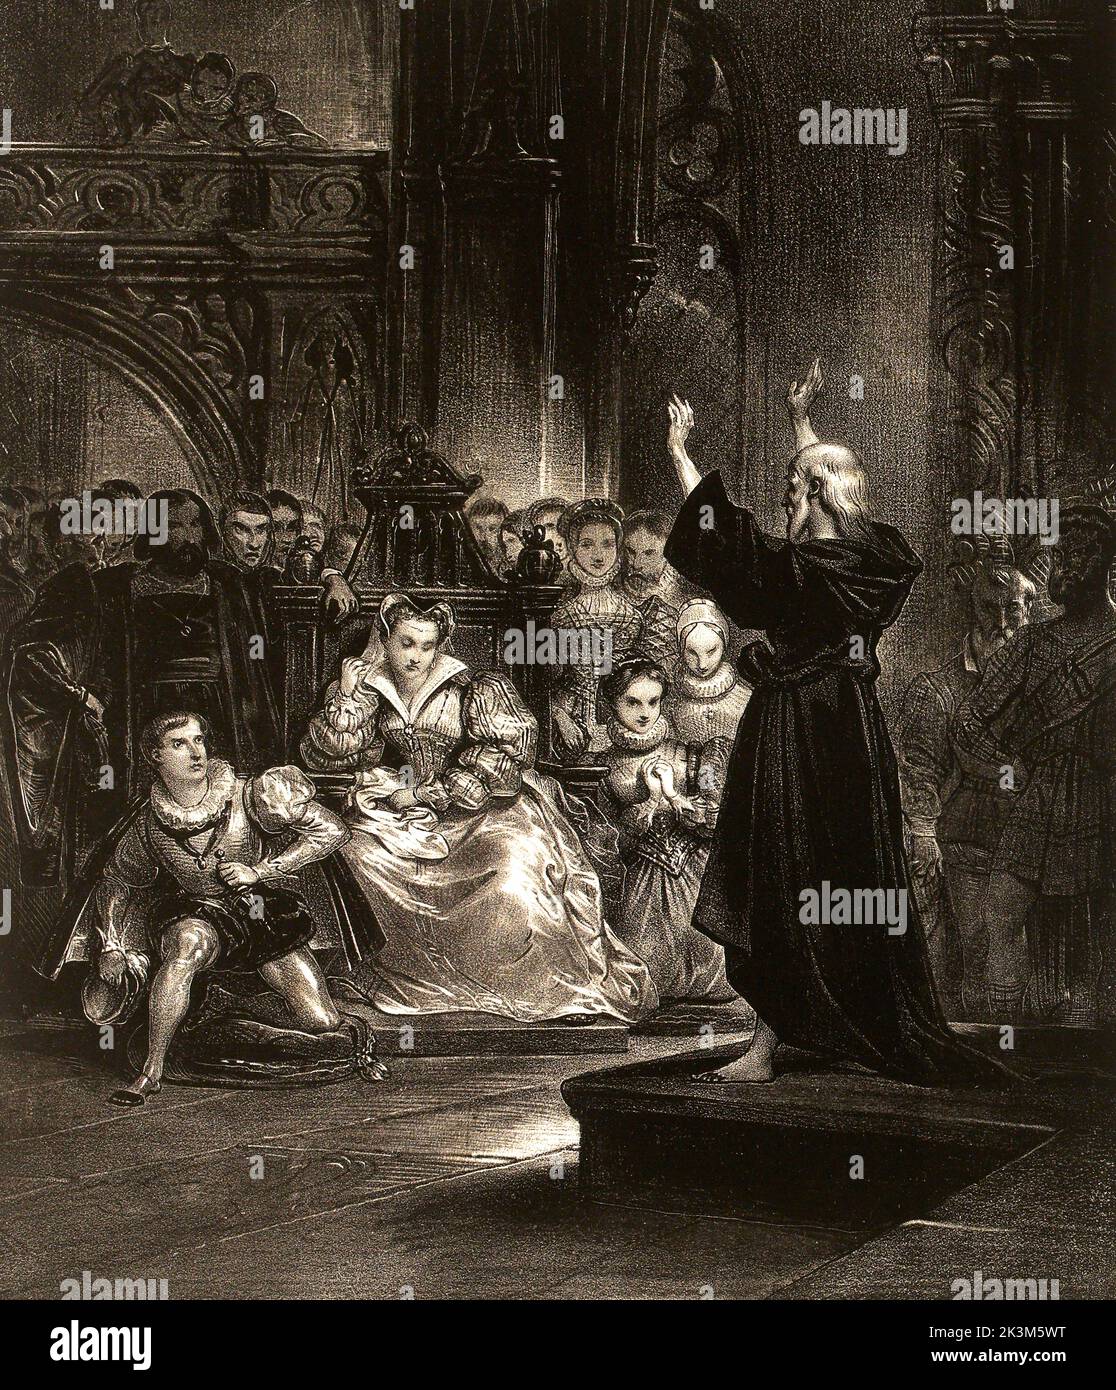 Ilustración - del libro 'El abad' de Walter Scott - 1829 Foto de stock